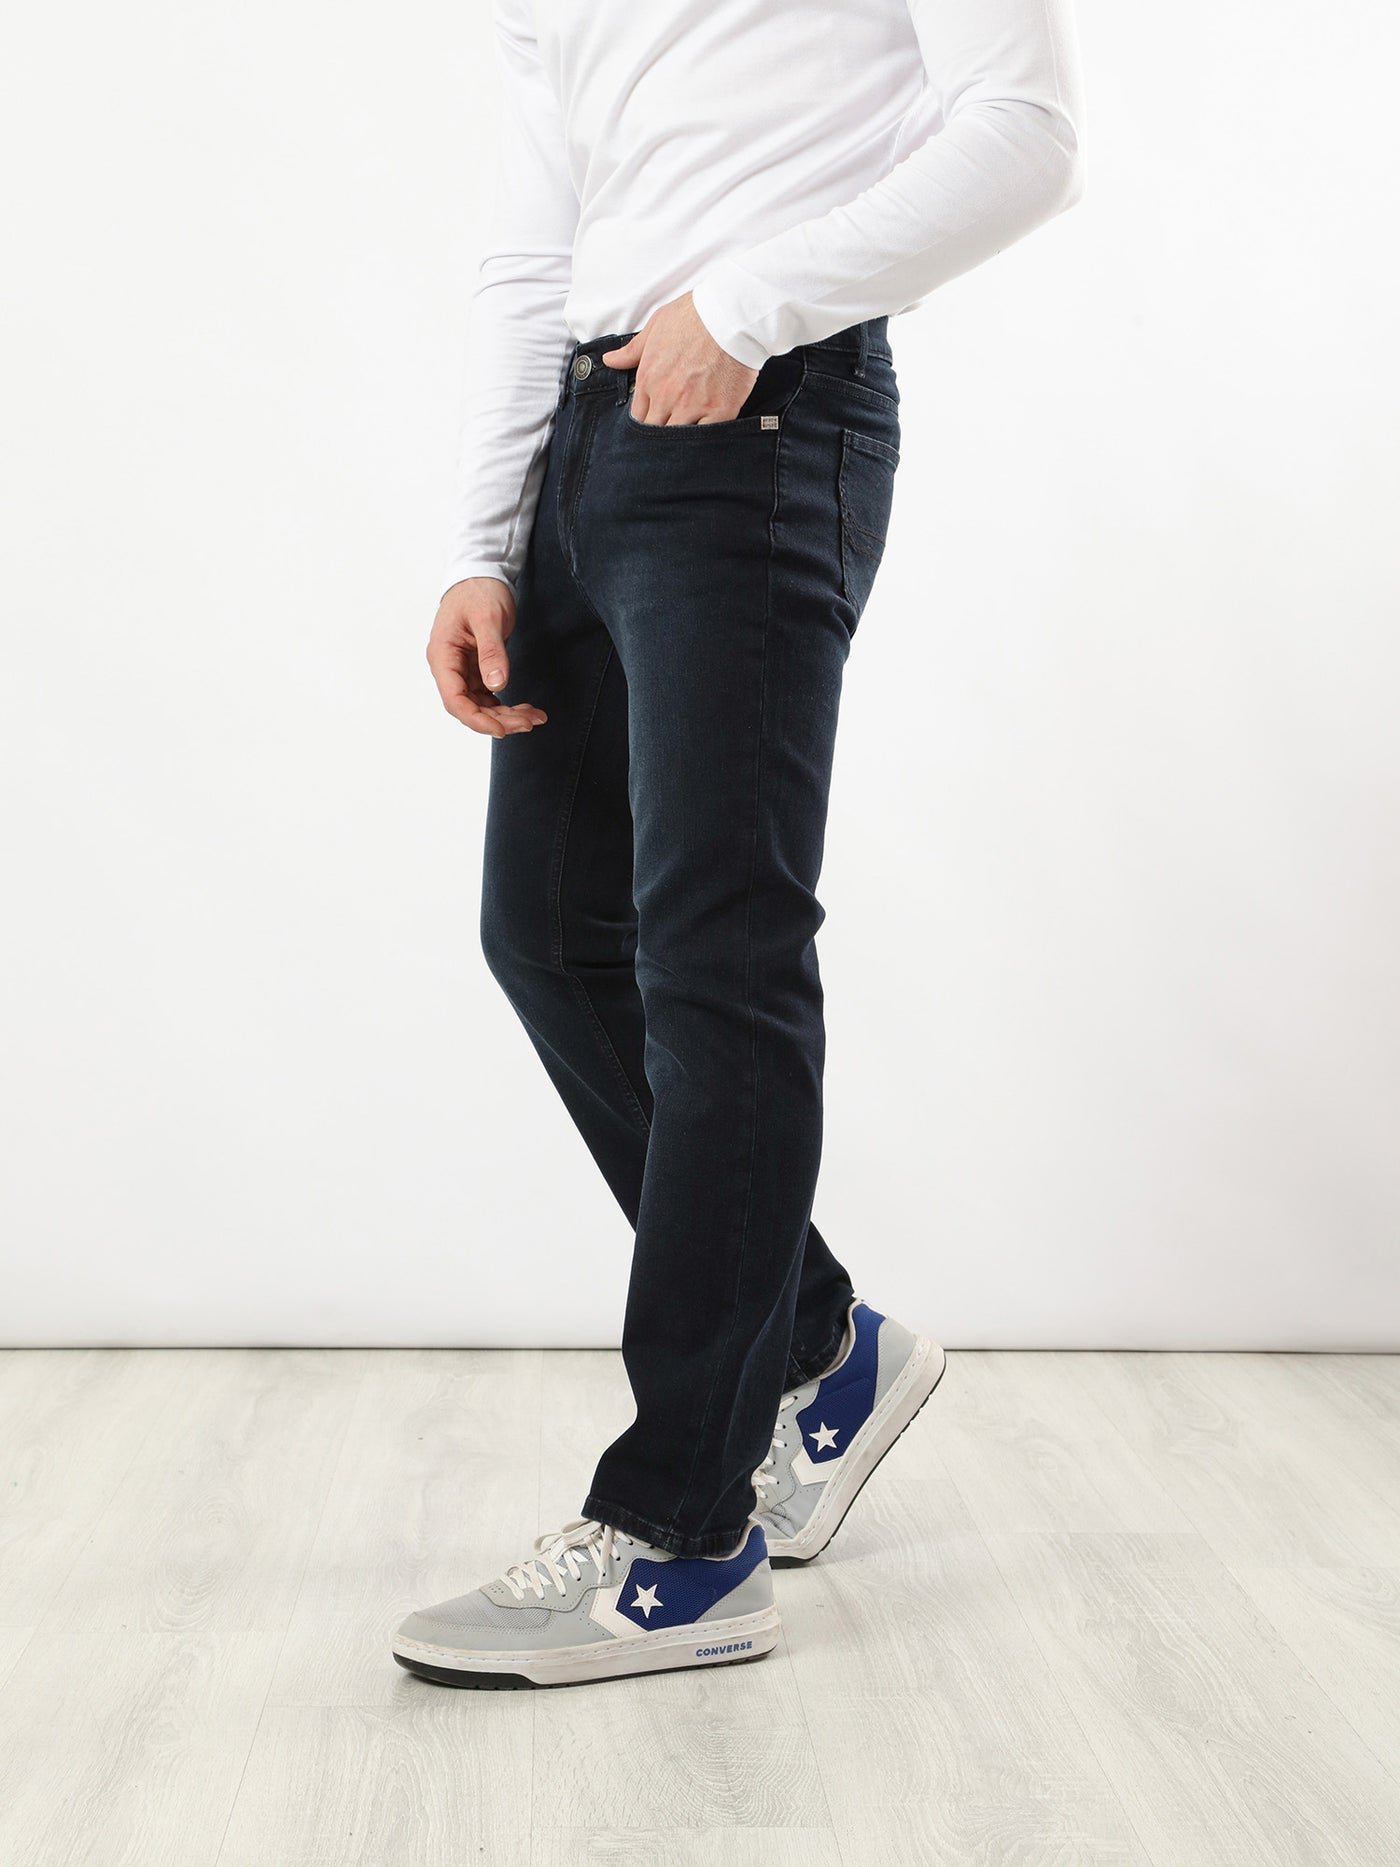 Jeans - Low Waist - Comfy Fit